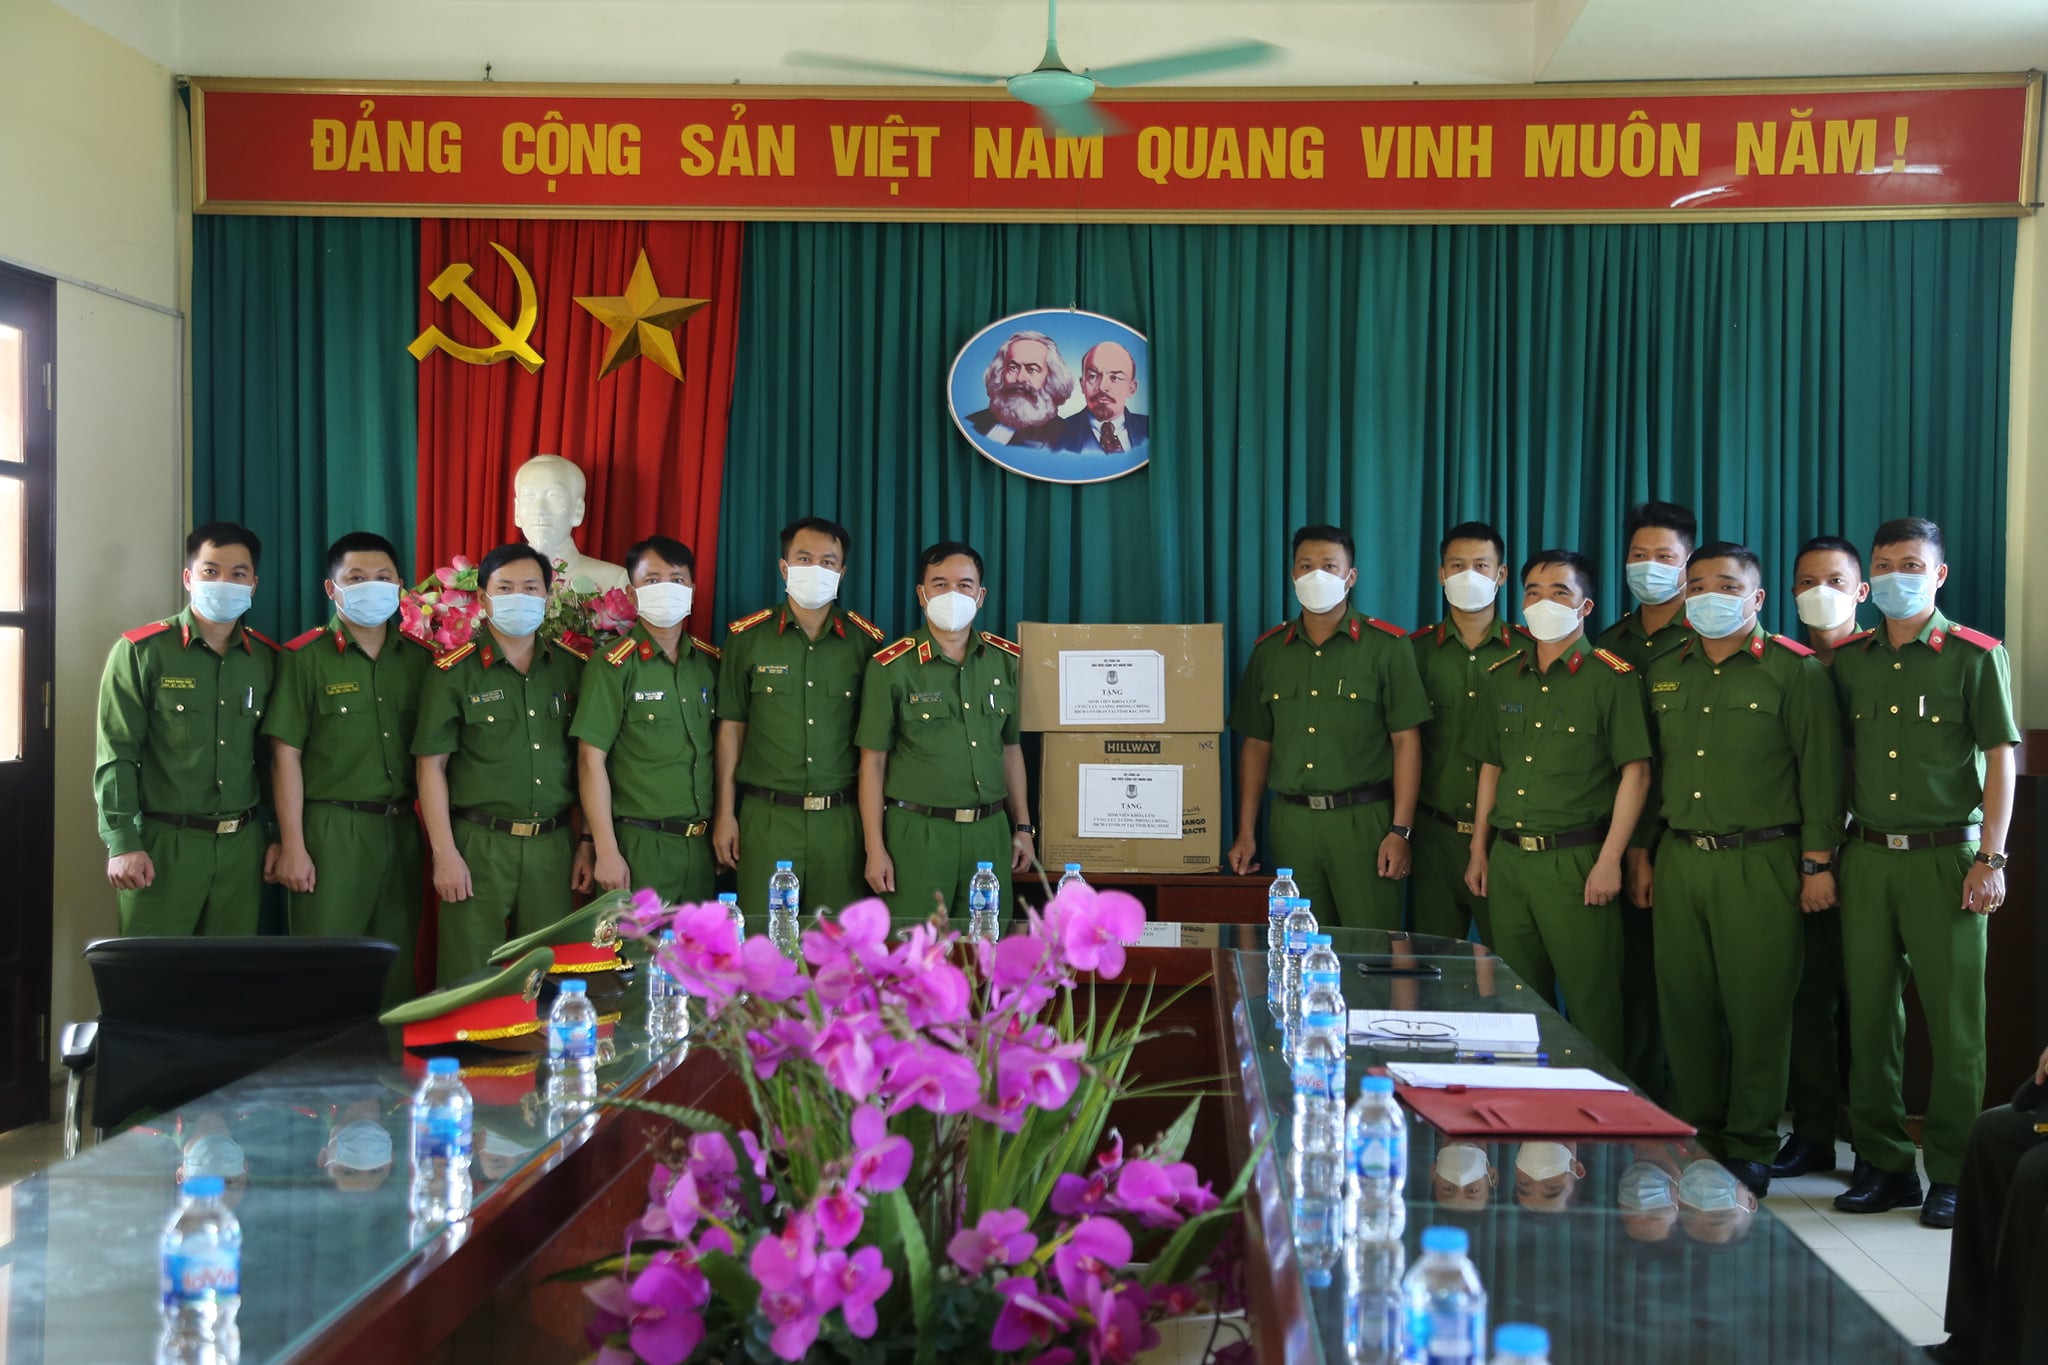 Thiếu tướng Nguyễn Đắc Hoan - Phó Giám đốc Học viện CSND tặng quà cho học viên Học viên đang tăng cường, chi viện tại huyện Yên Phong, tỉnh Bắc Ninh